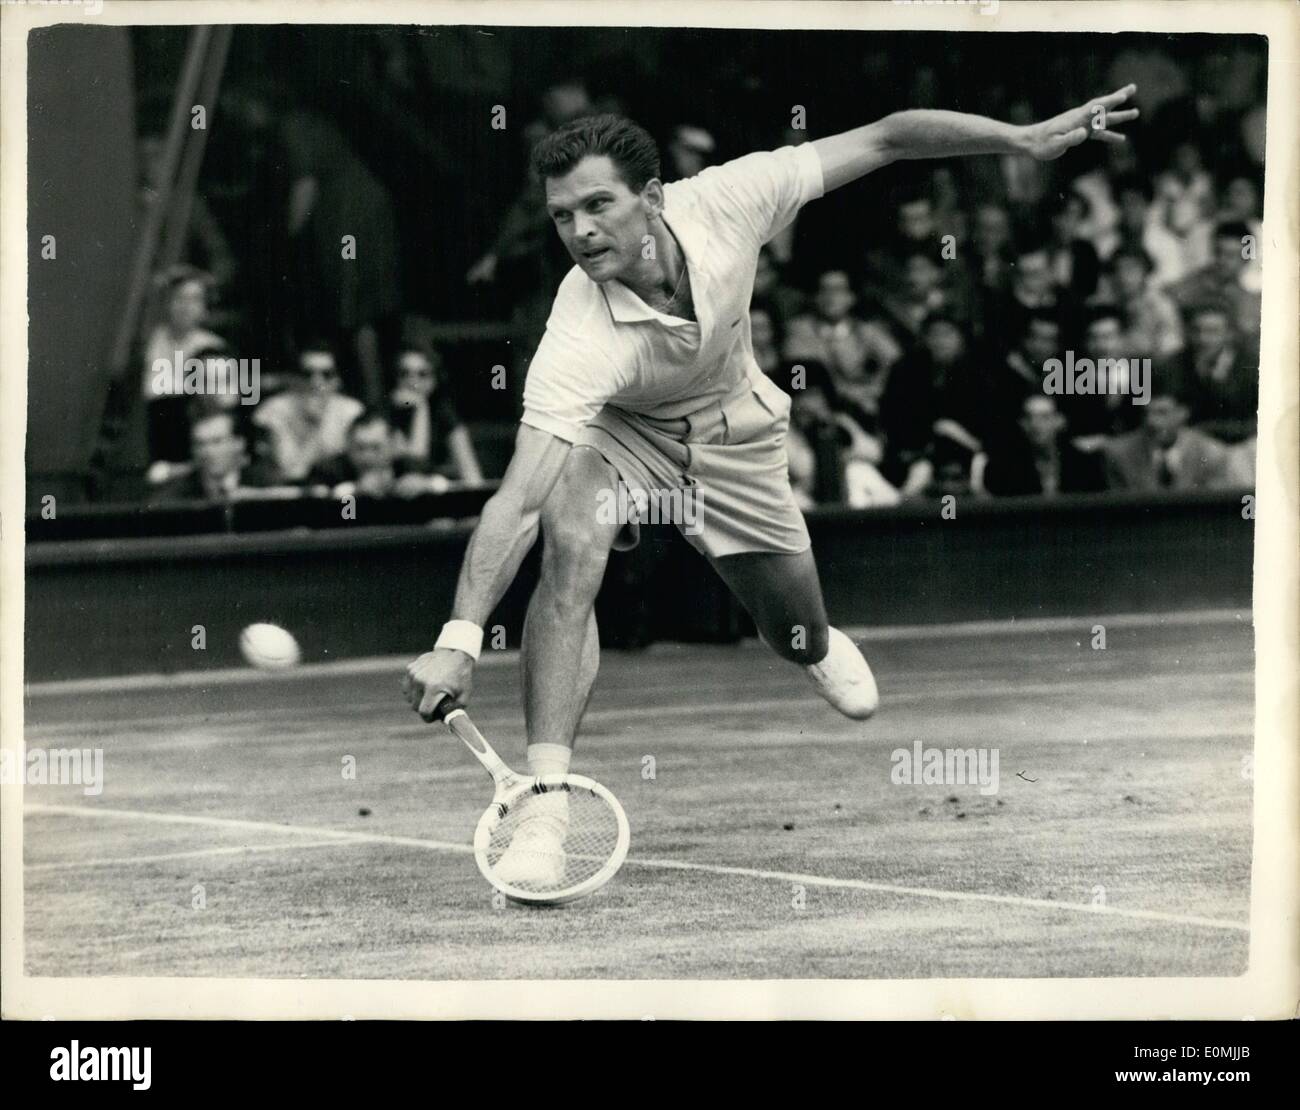 6. Juni 1955 - weiter Wimbledon-Turnier. Budge Patty schlägt Lew Hoad. Foto zeigt Budge Patty (USA) im Kampf gegen L.A. Hoad (Australien), während heute ihr Match in Wimbledon. Patty gewann in drei Sätzen. Stockfoto